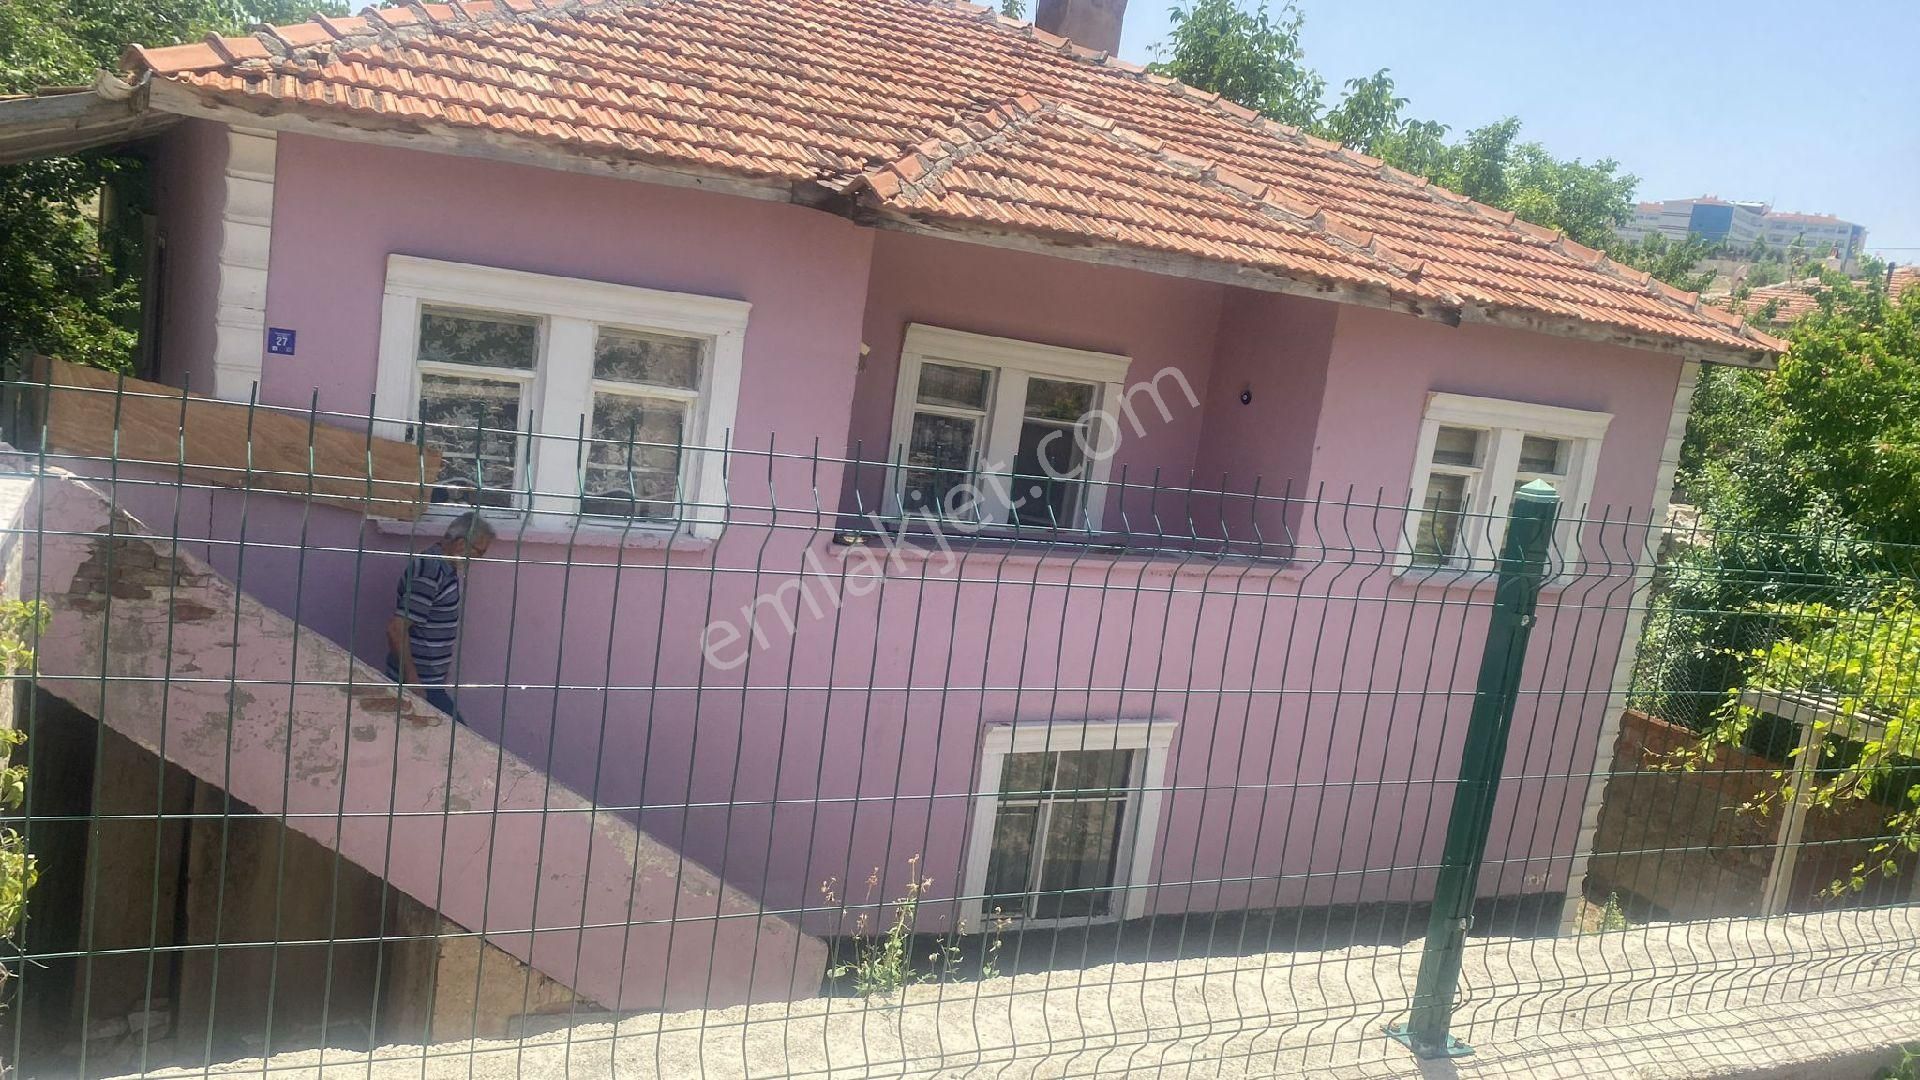 Kırşehir Merkez Bağbaşı Satılık Müstakil Ev Bağbaşı'nda müstakil ev